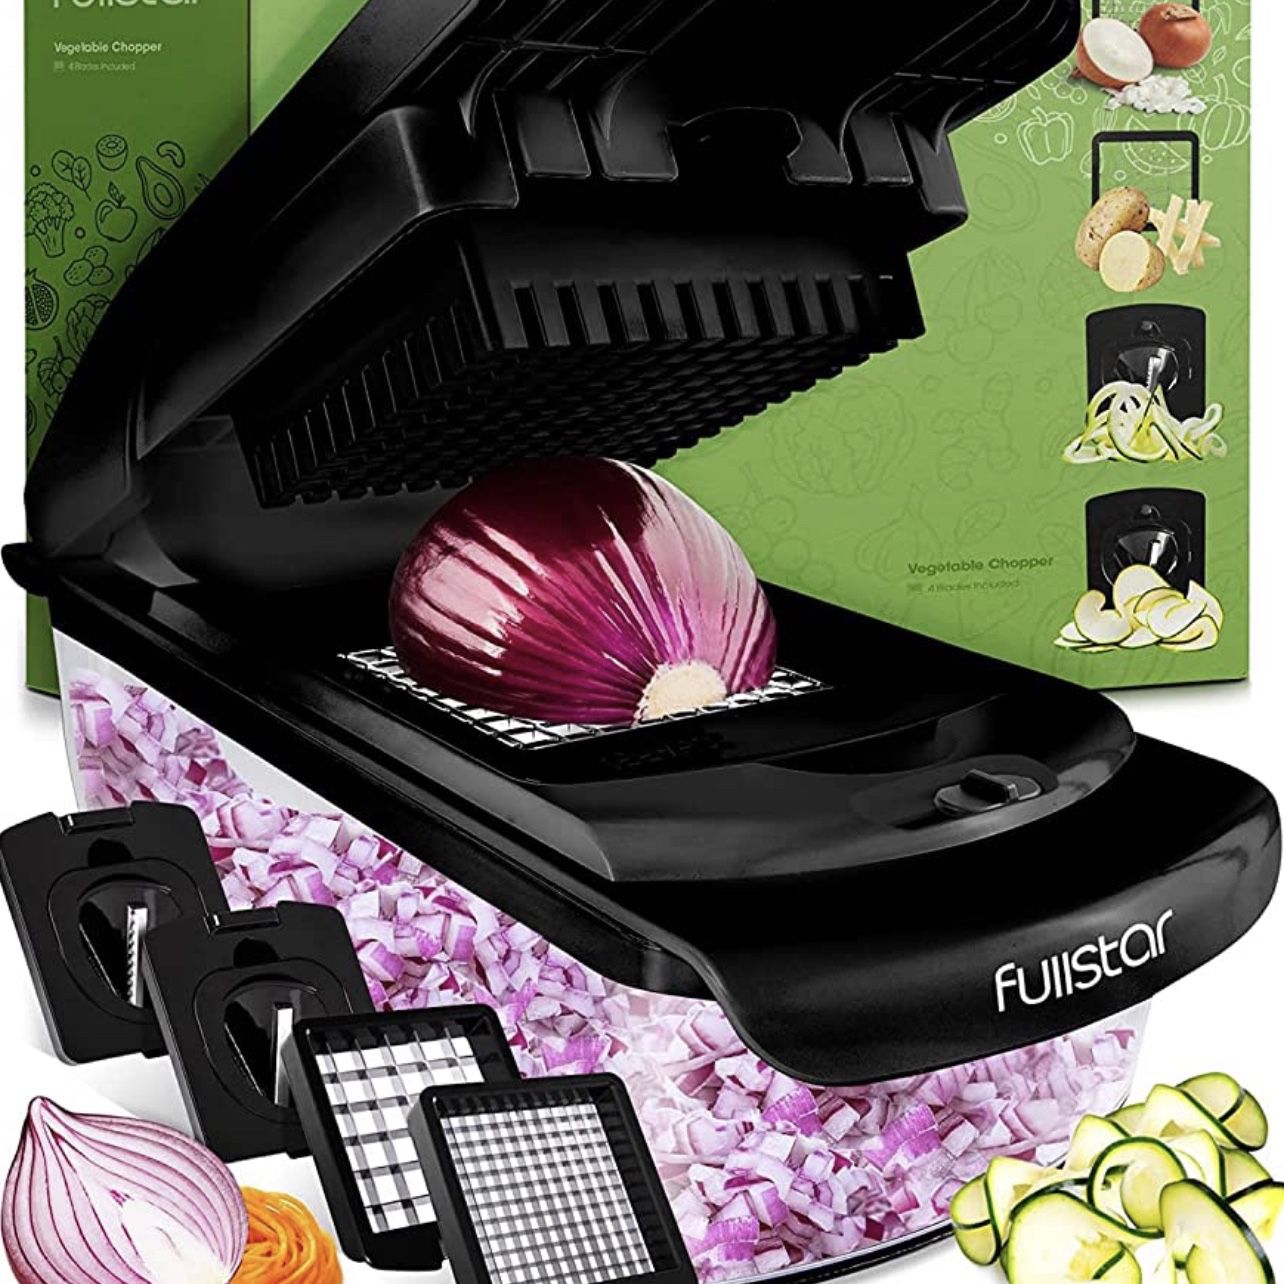 Fullstar Vegetable Chopper - Spiralizer Vegetable Slicer - Onion